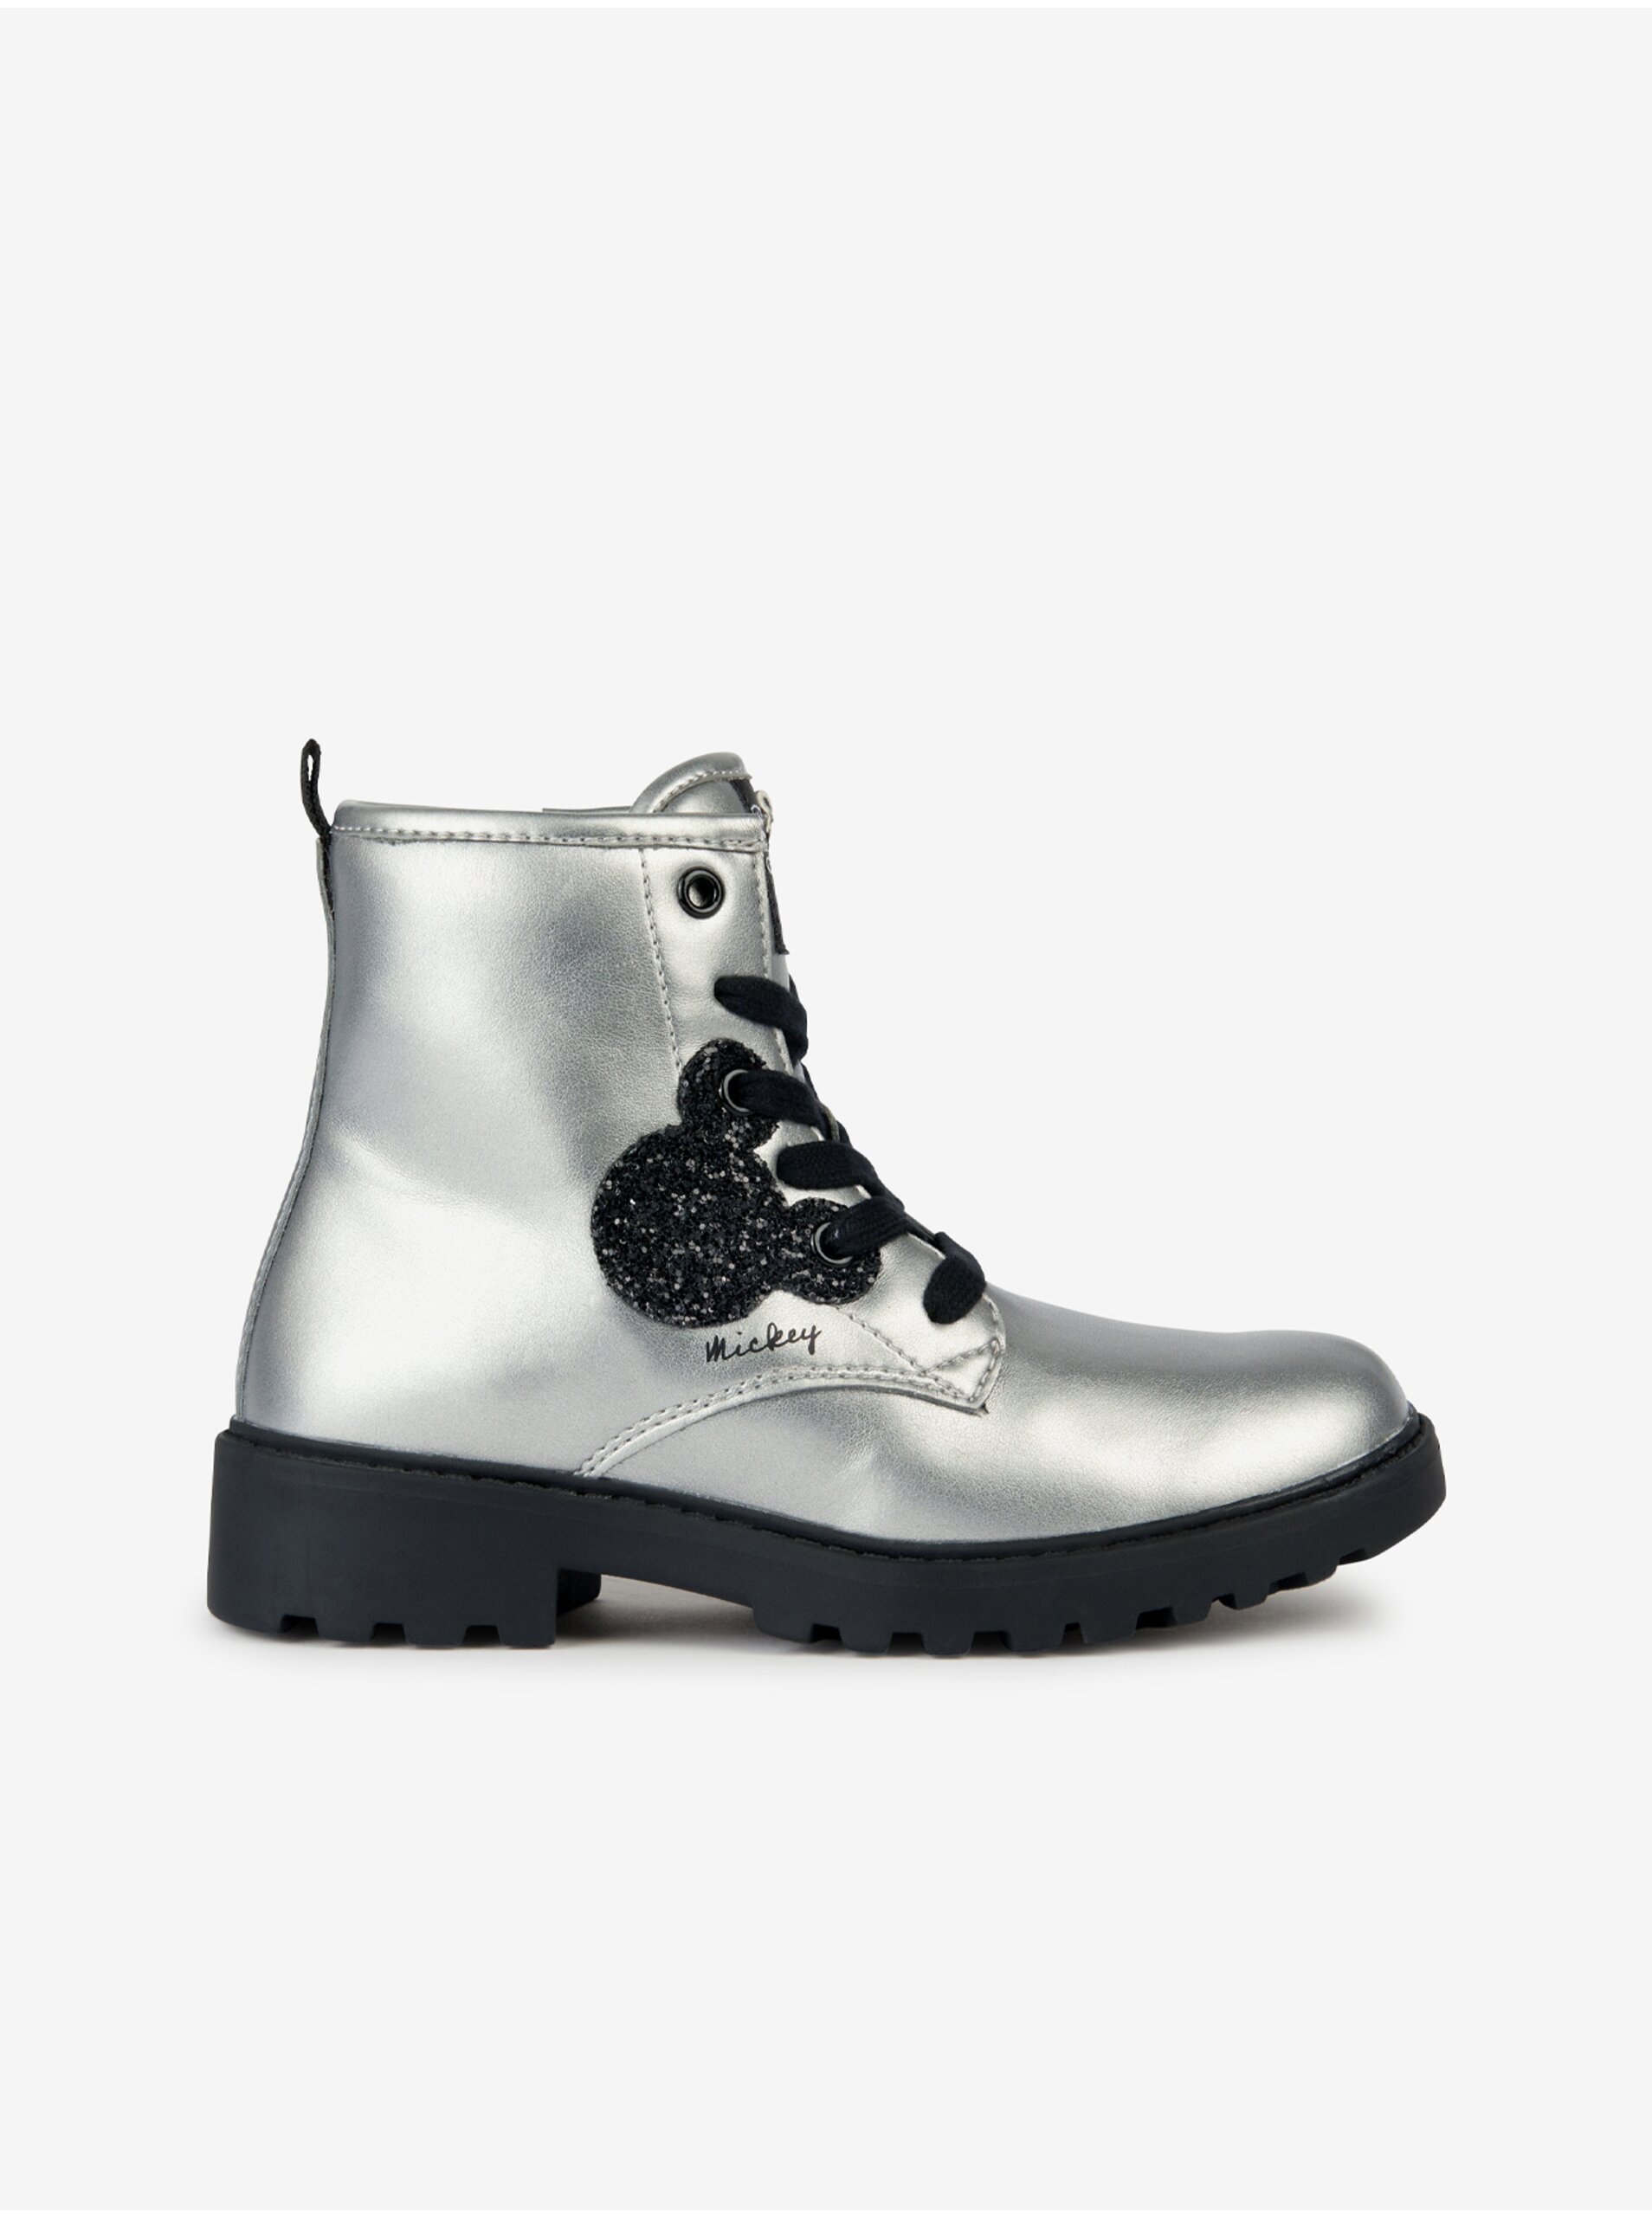 E-shop Holčičí kotníkové boty ve stříbrné barvě Geox Casey